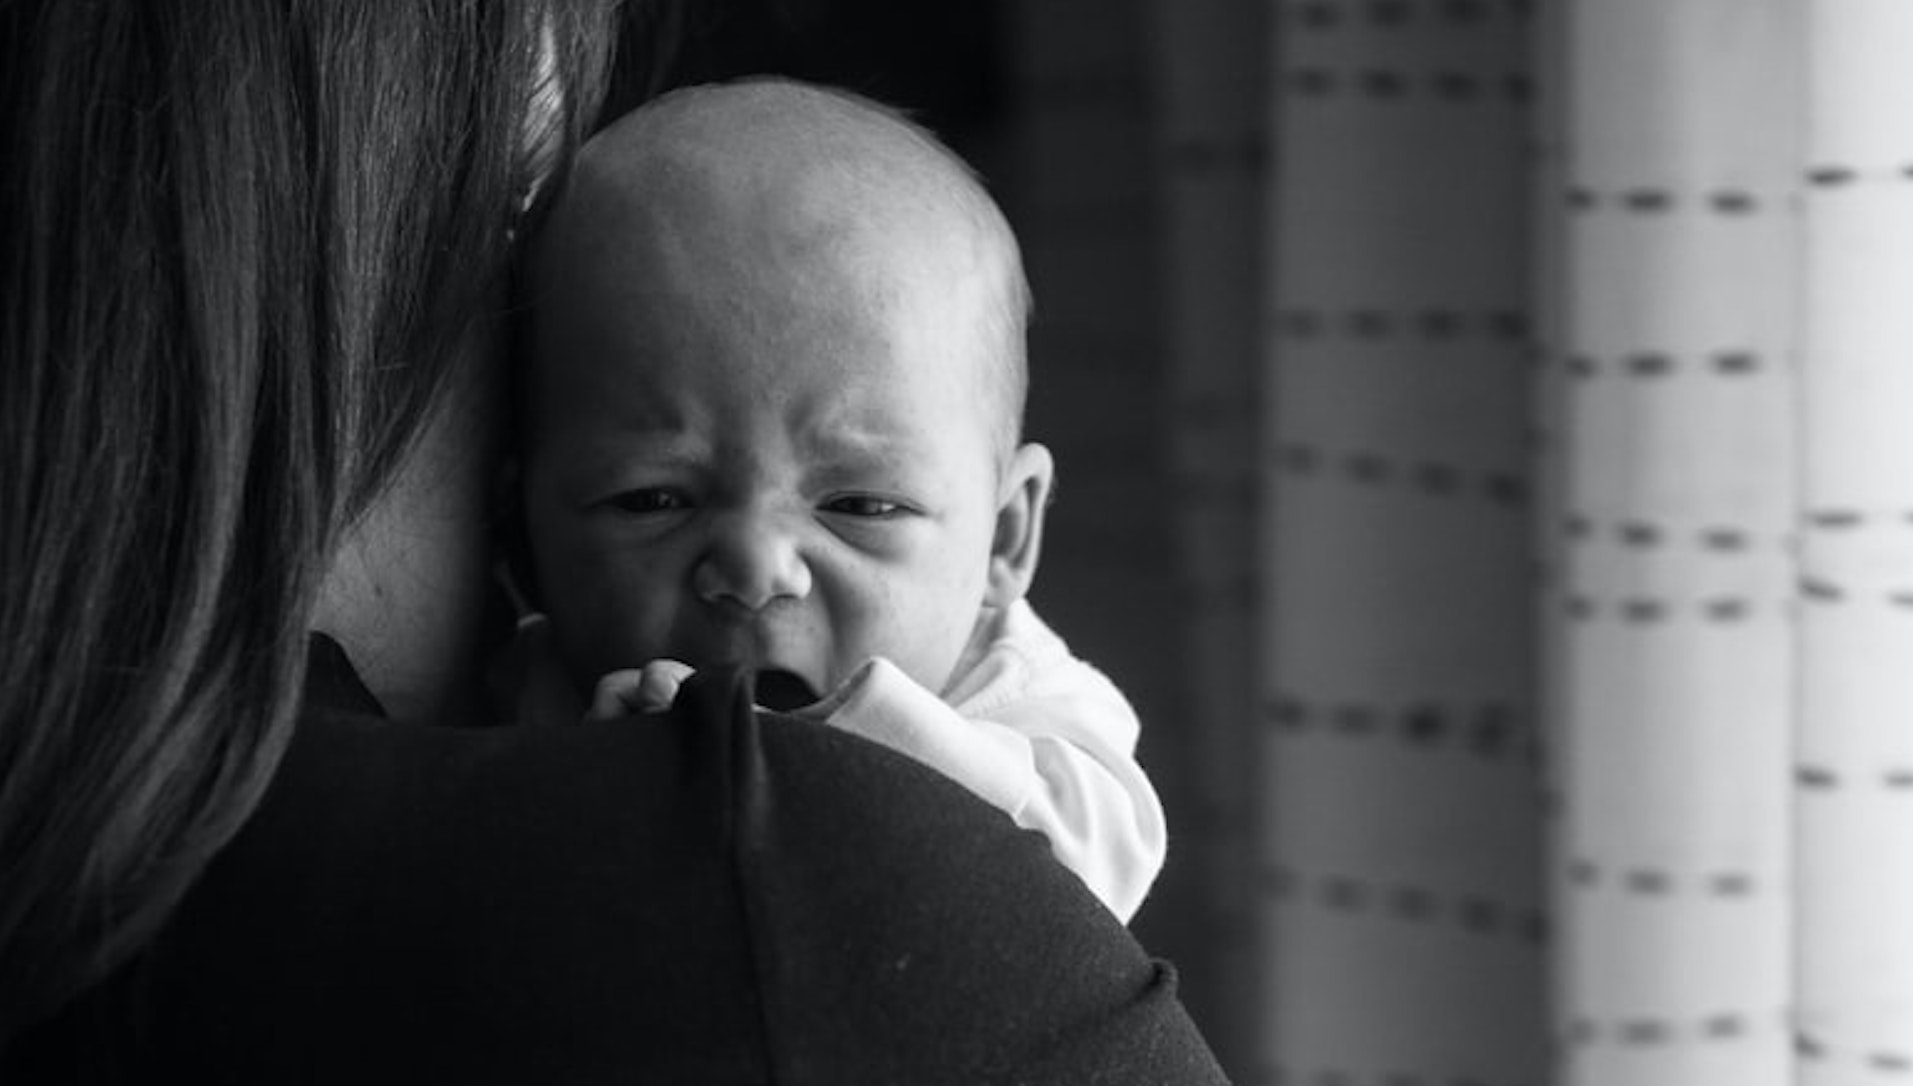 Une campagne choc alerte sur le drame du syndrome du bébé secoué